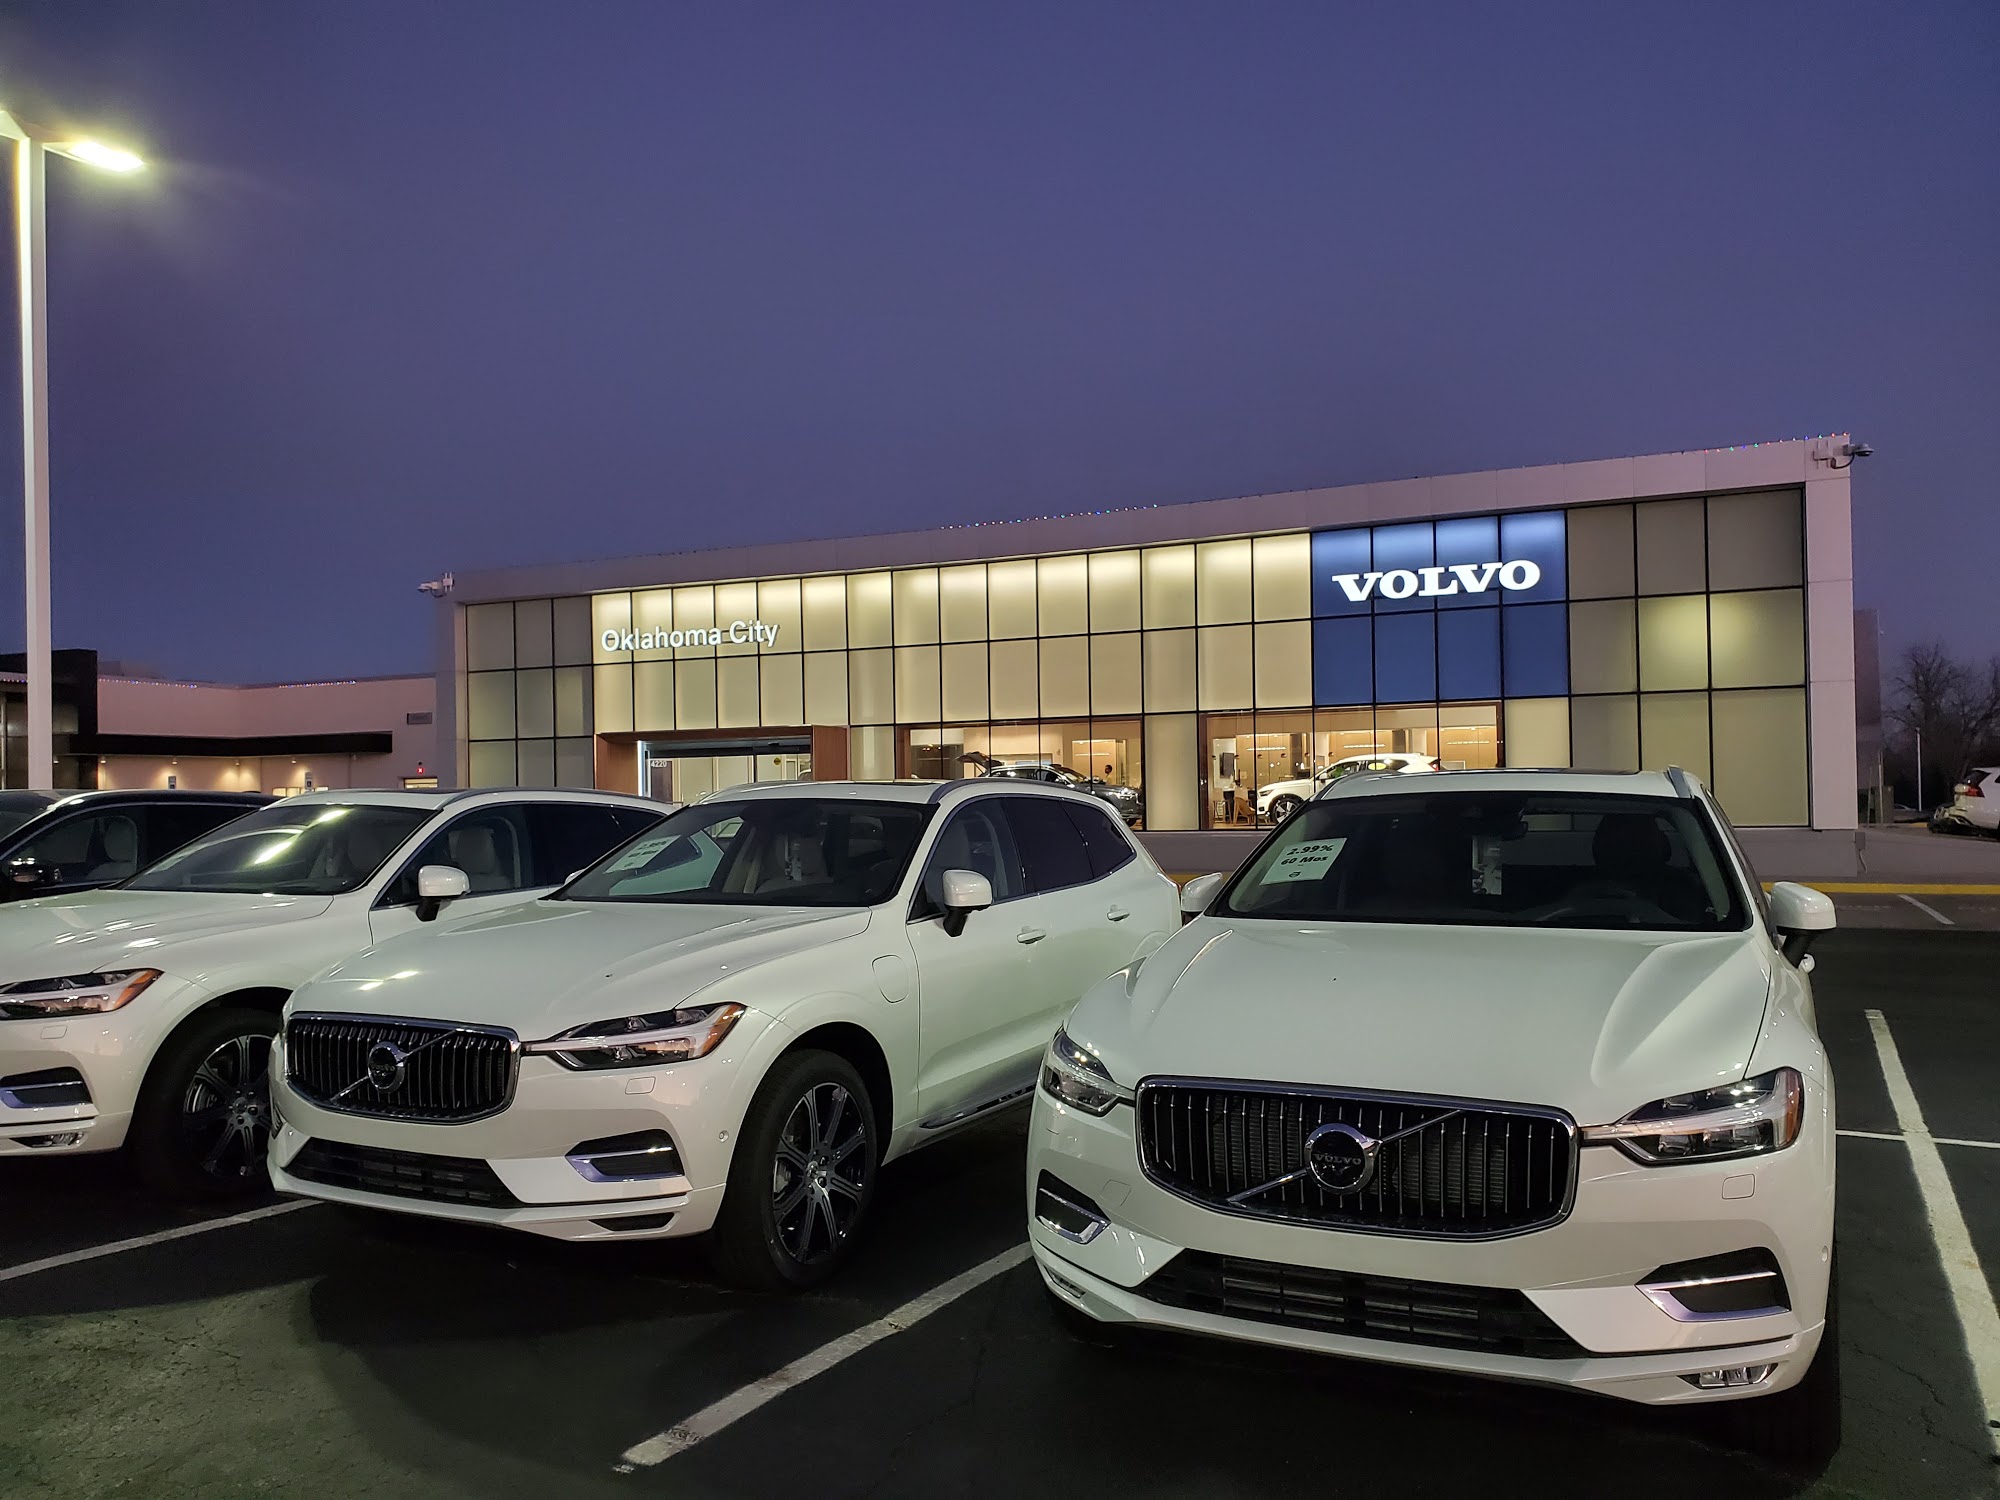 Volvo Cars Oklahoma City Sales Center